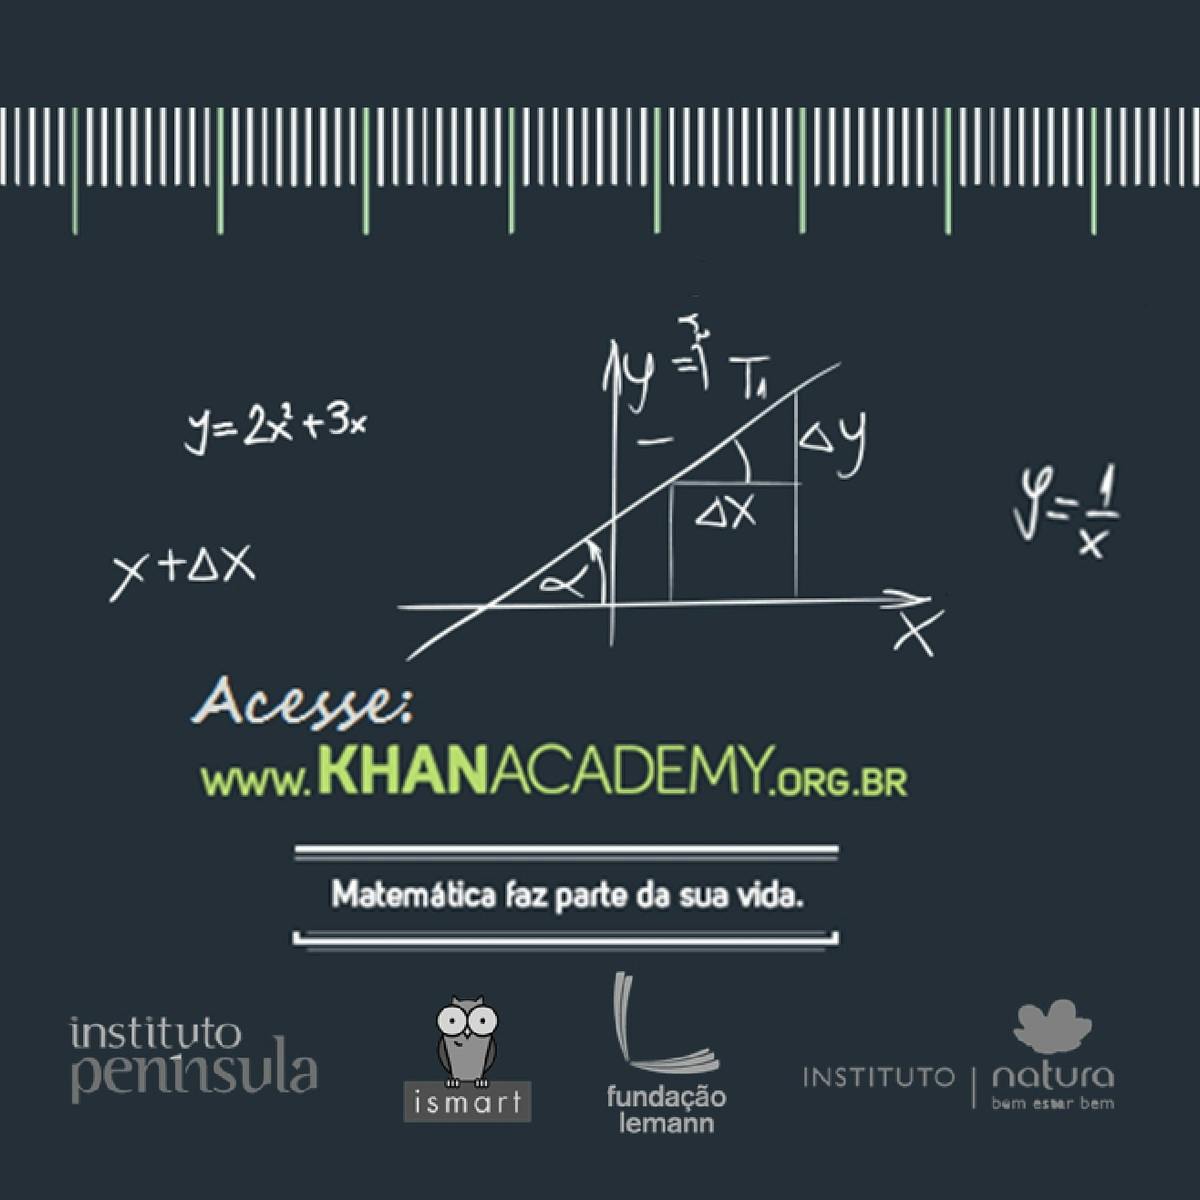 Free Course: Explorando os recursos educacionais da Khan Academy from  Fundação Lemann